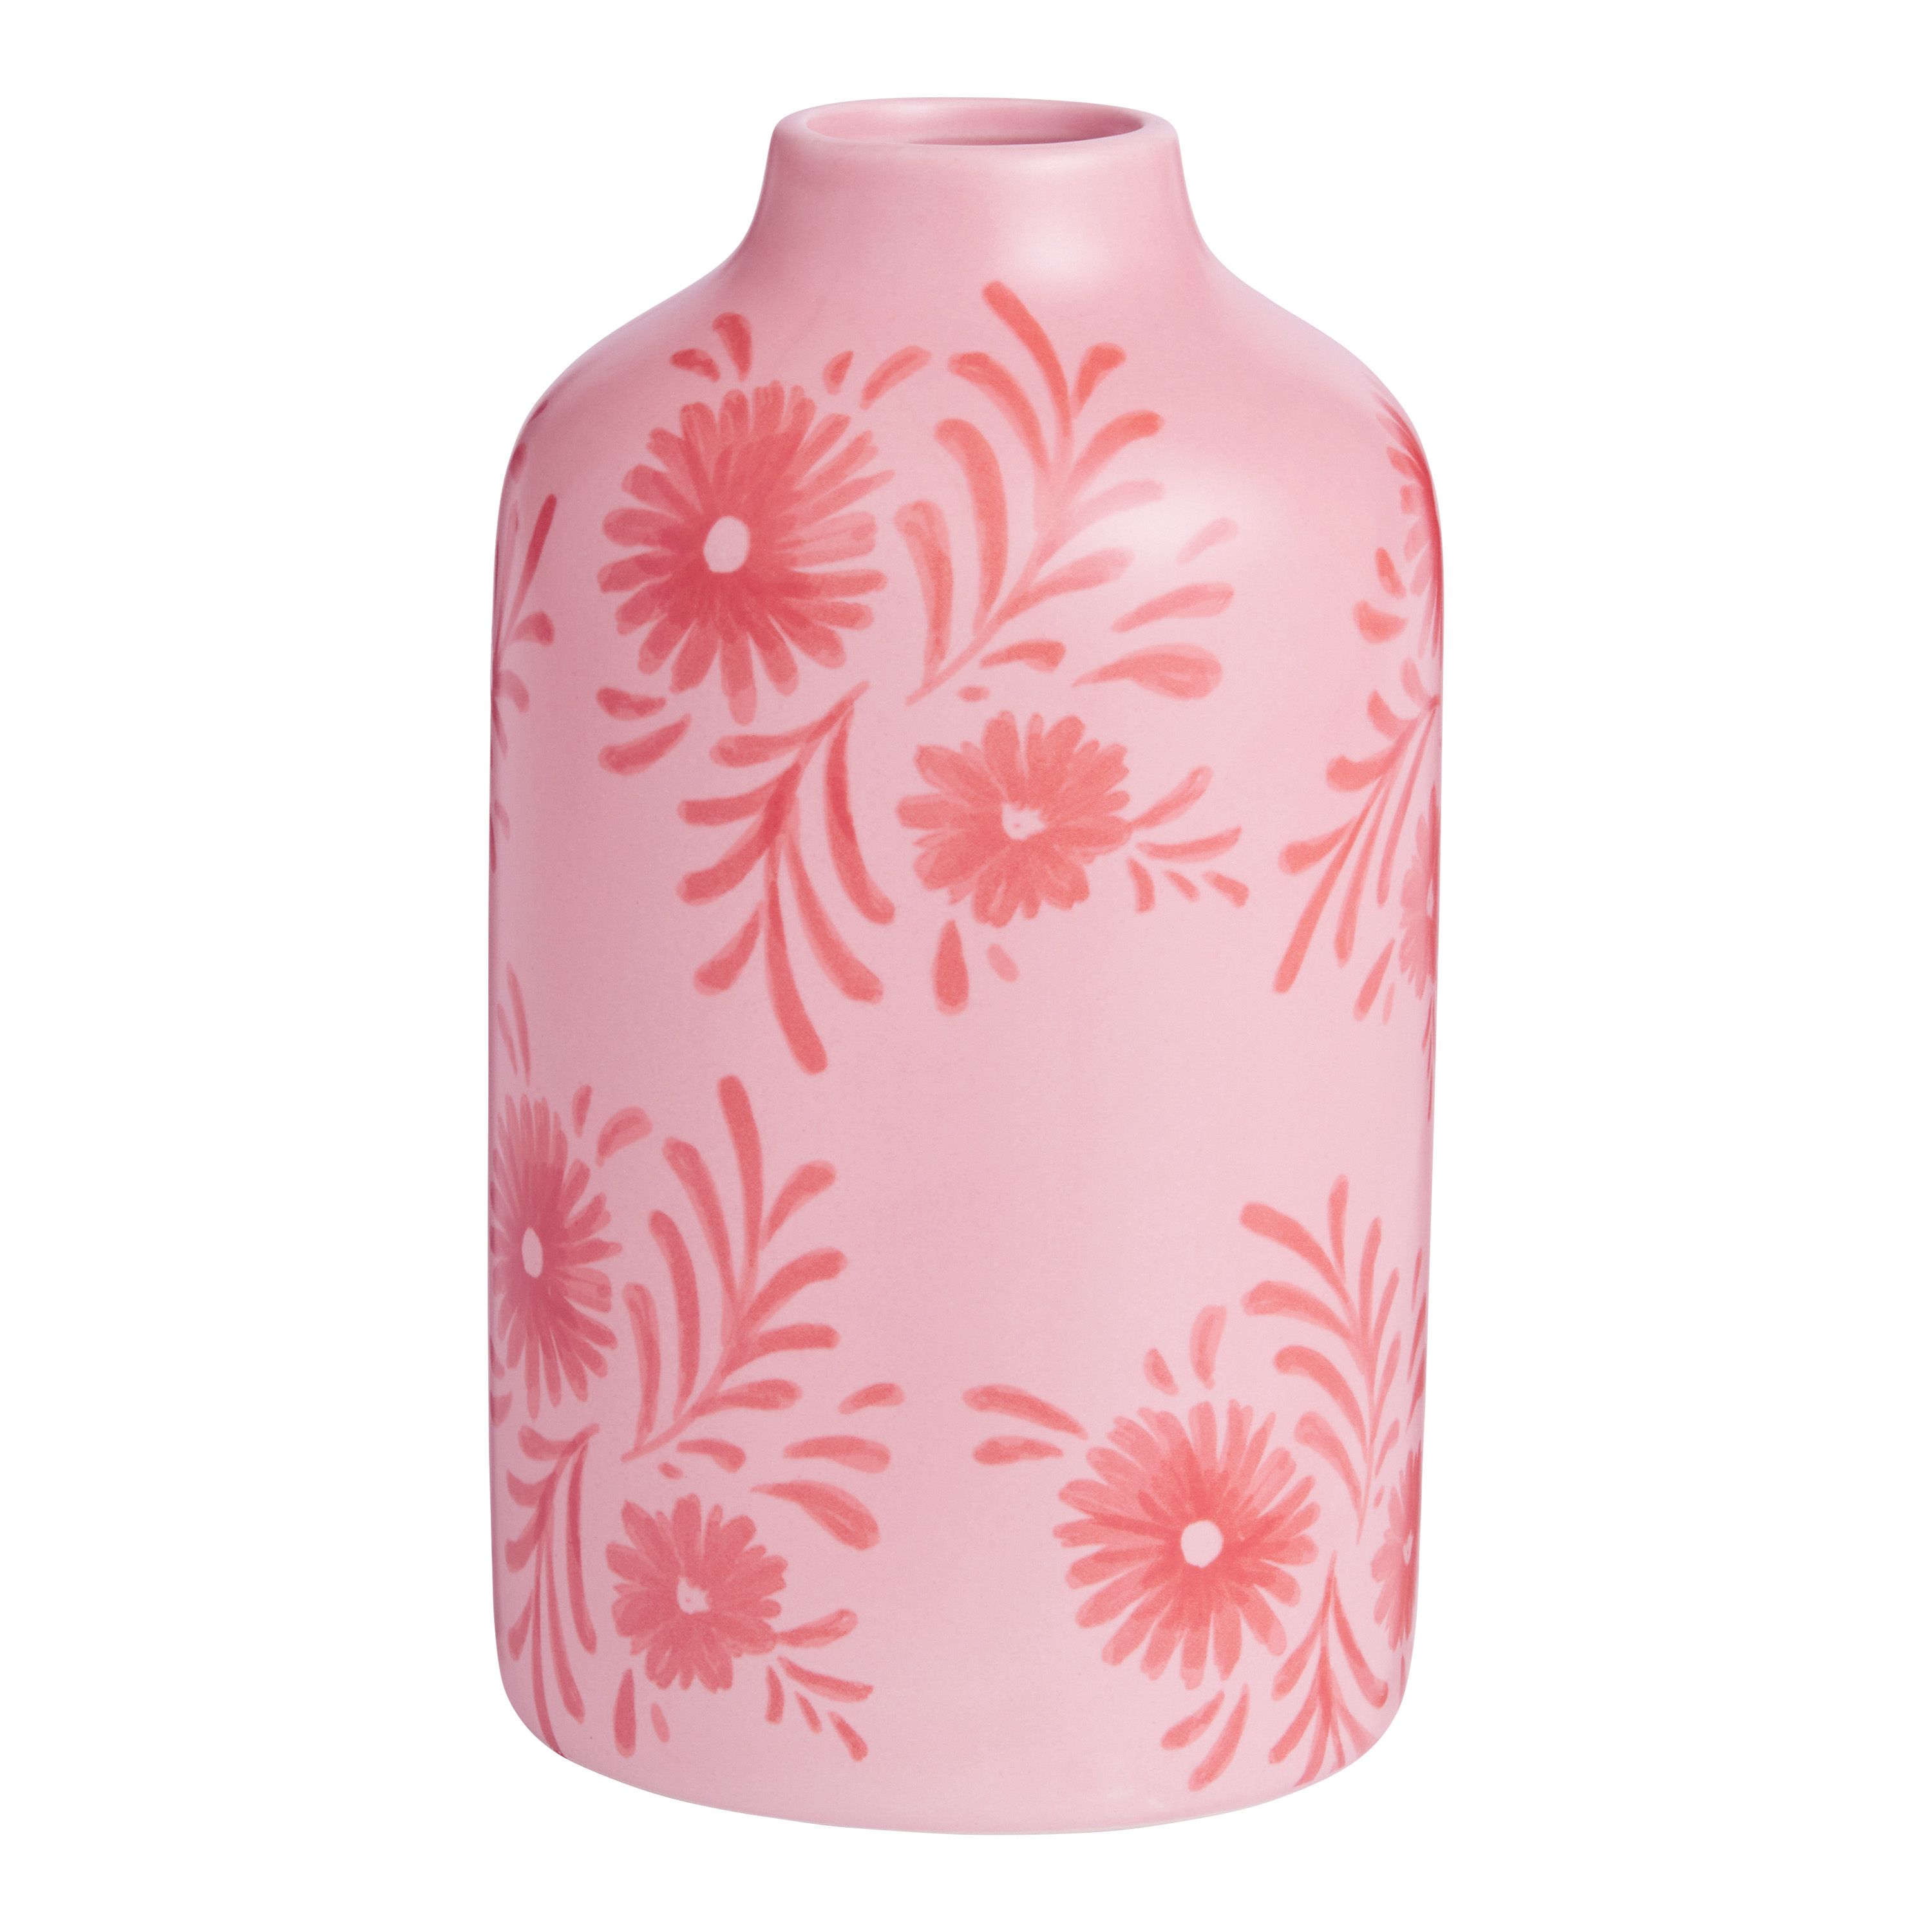 Blush Pink and Red Ceramic Floral Vase - World Market | World Market